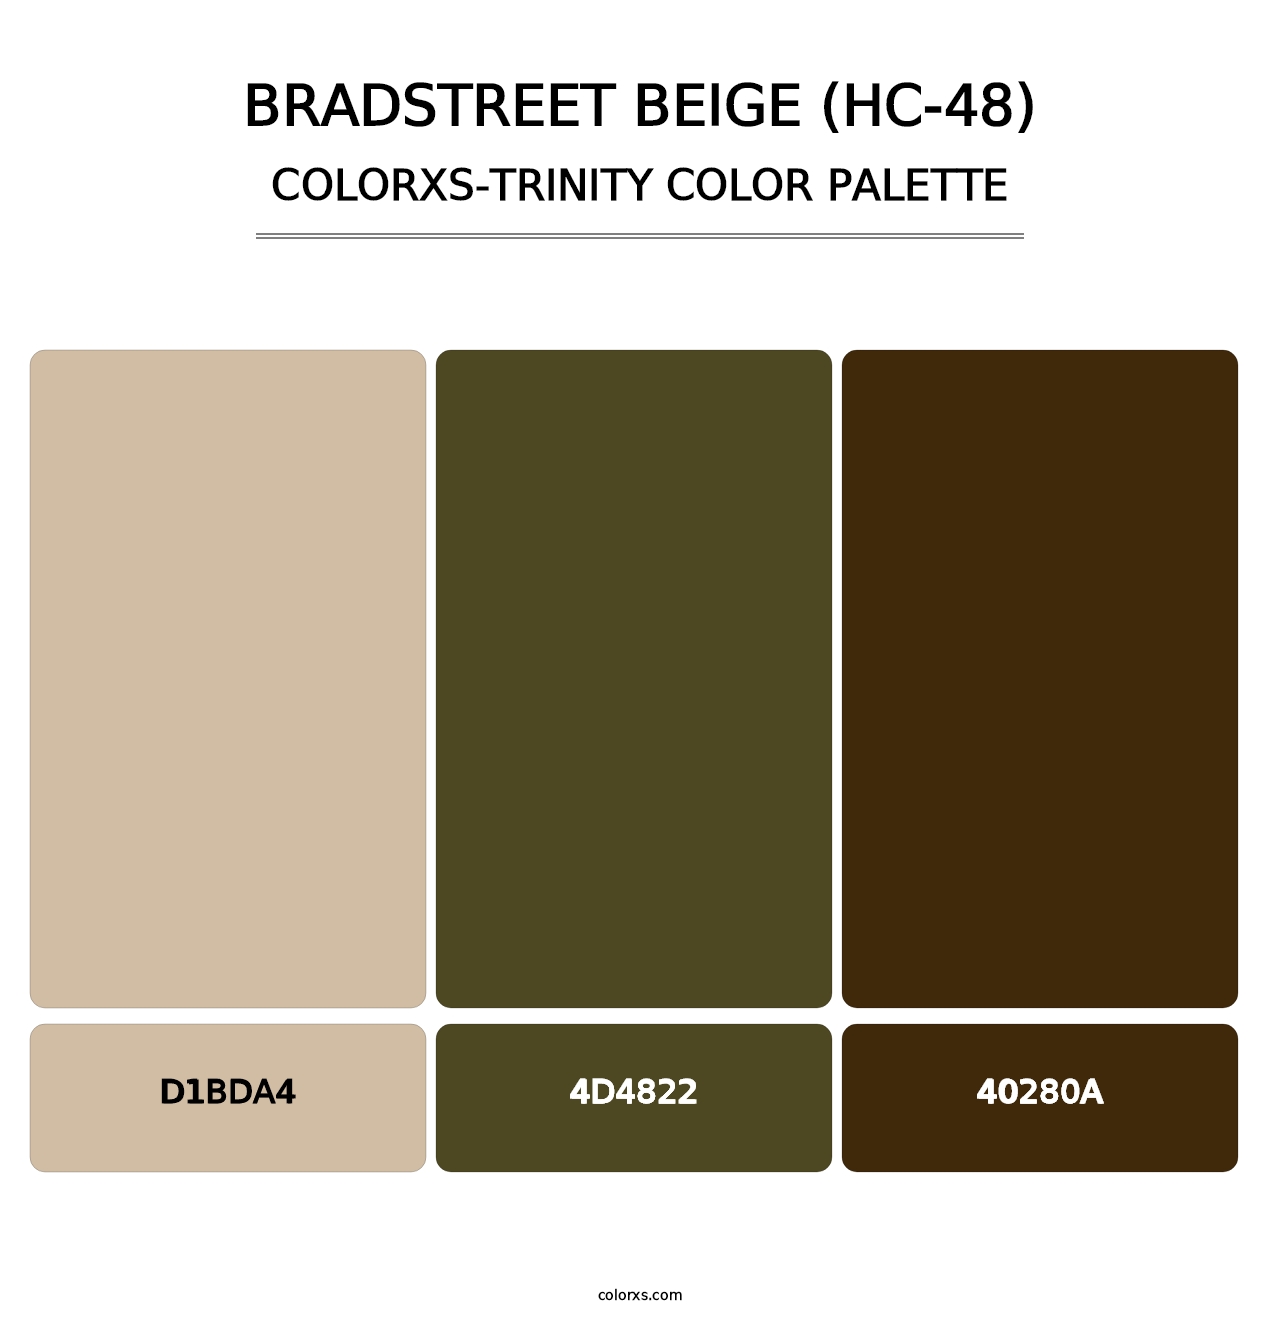 Bradstreet Beige (HC-48) - Colorxs Trinity Palette